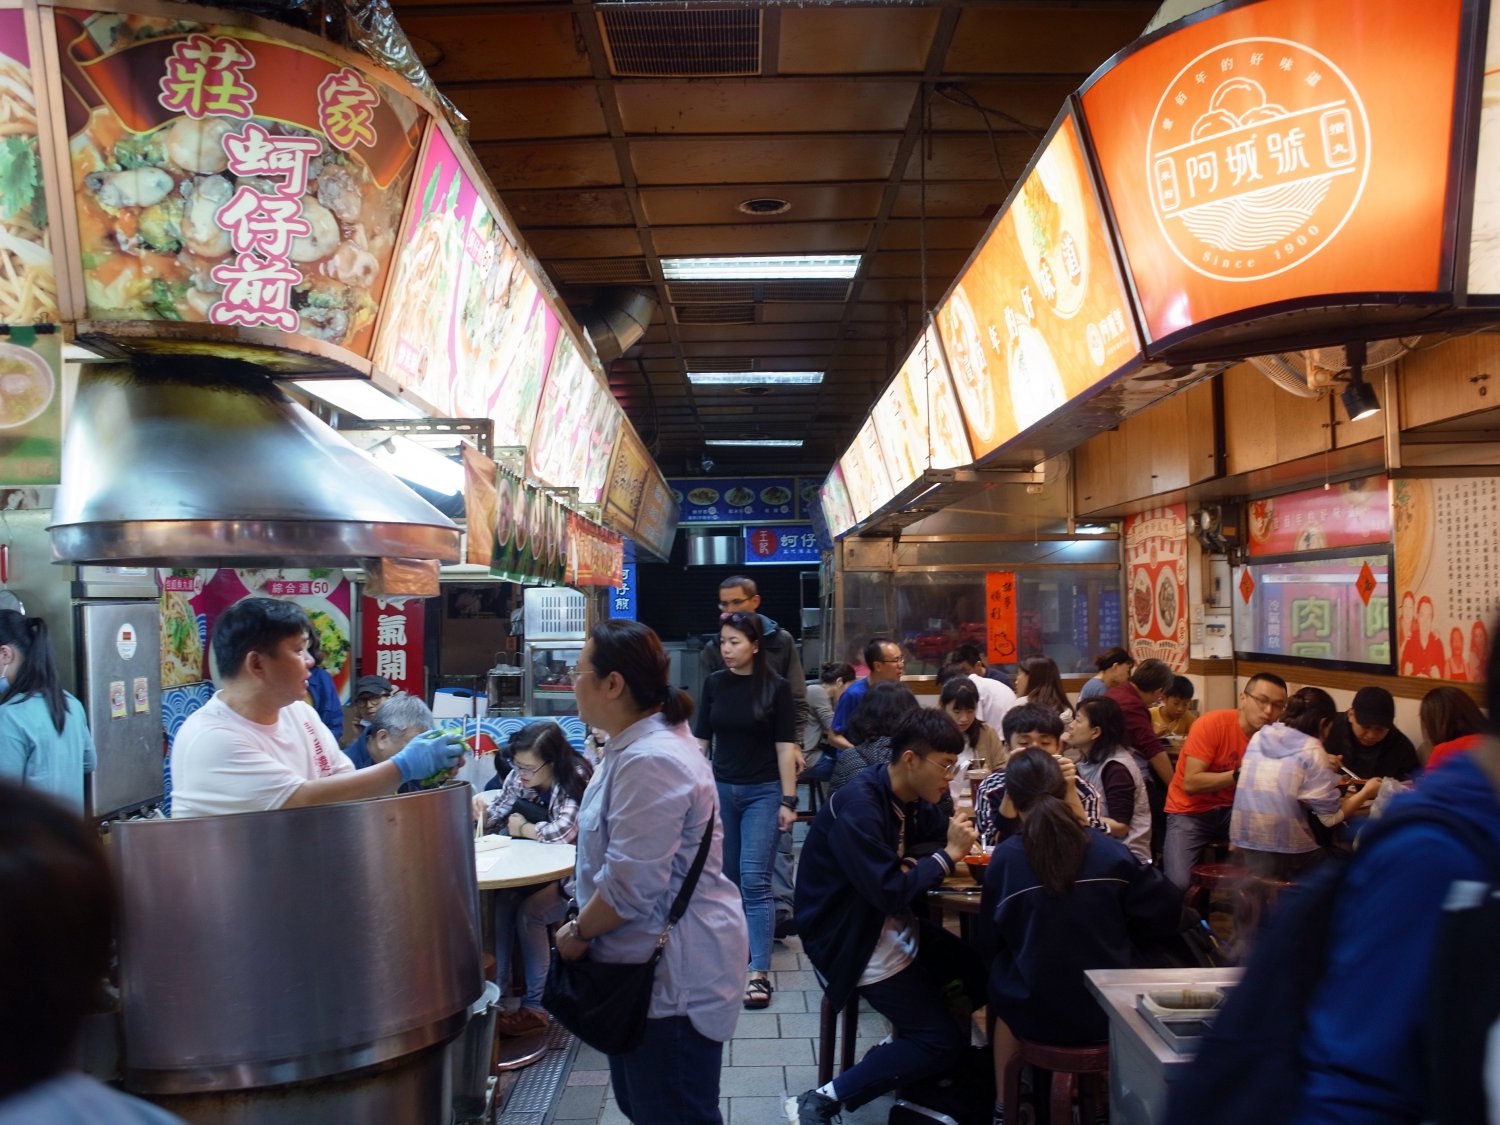 市場内には新竹名物のビーフンの店がずらりと並ぶ